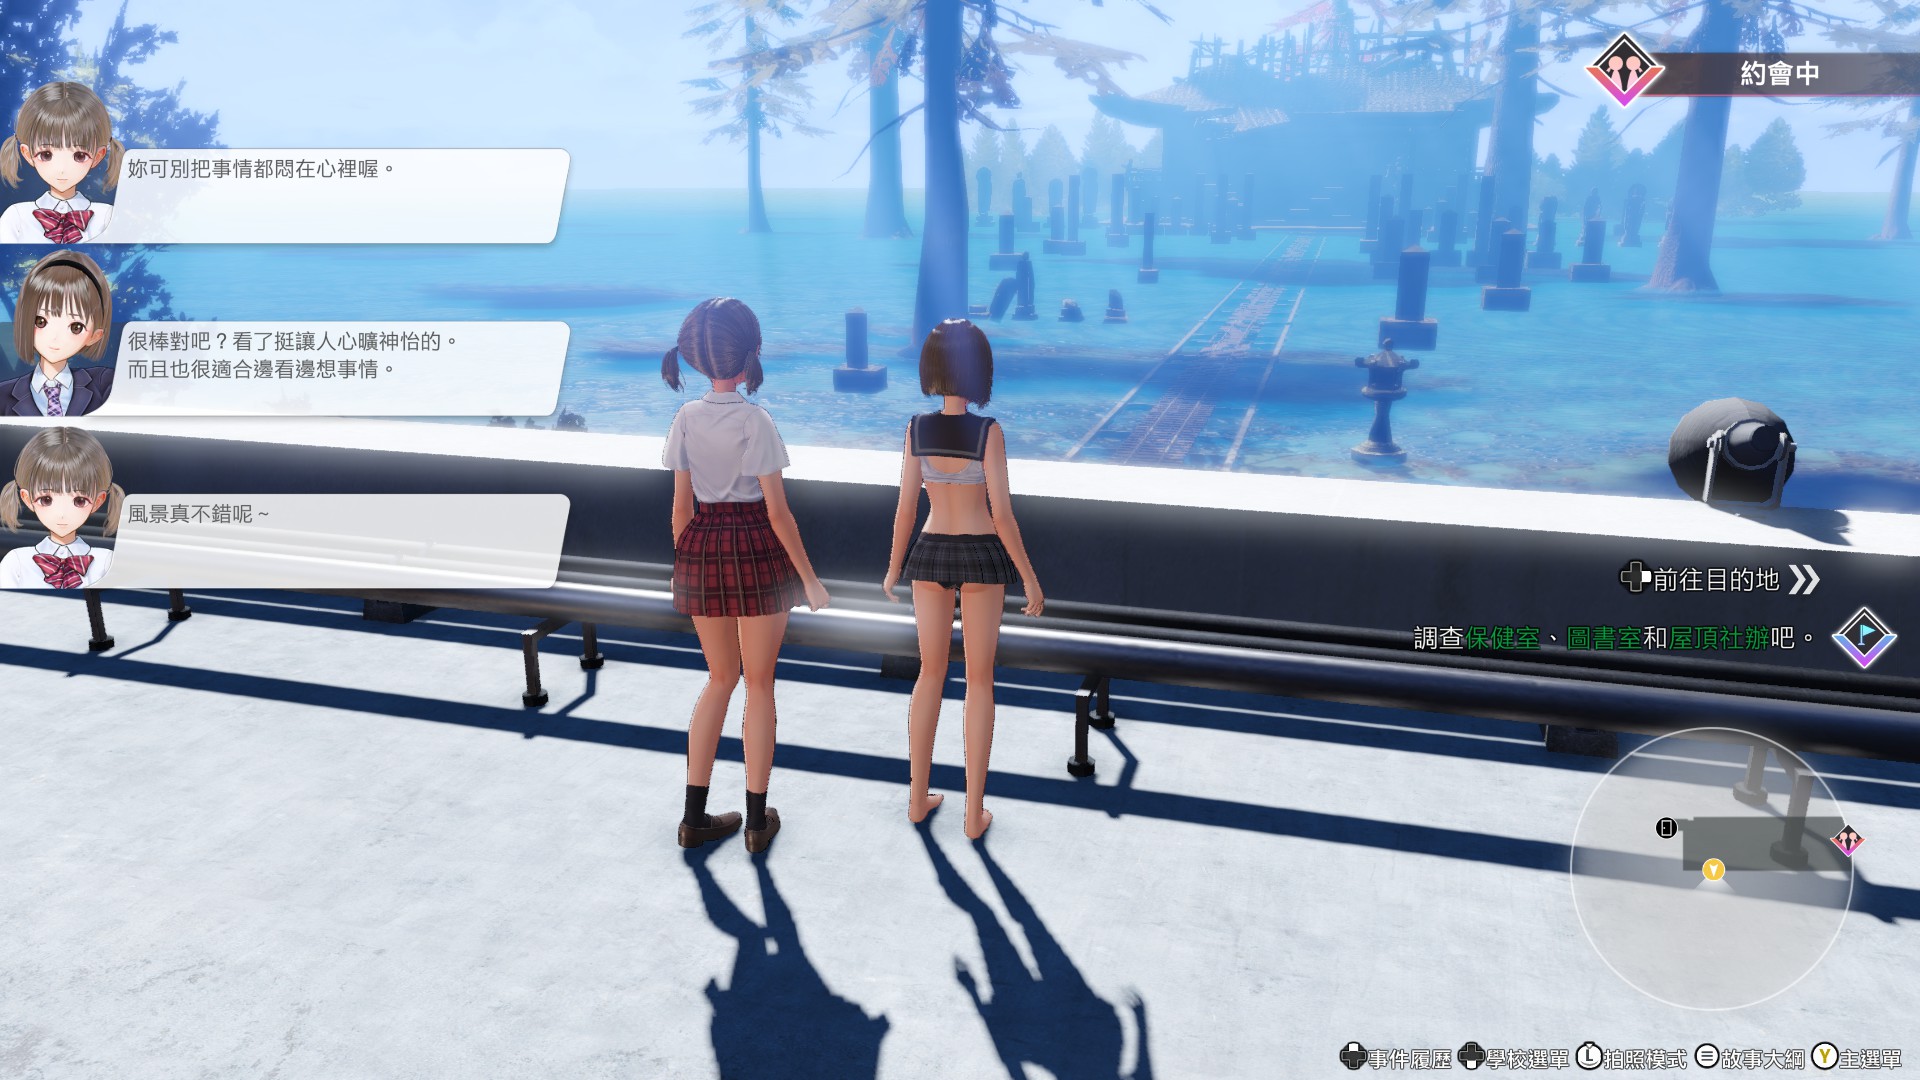 玩家可以和自己喜歡的女孩約會、增加感情。